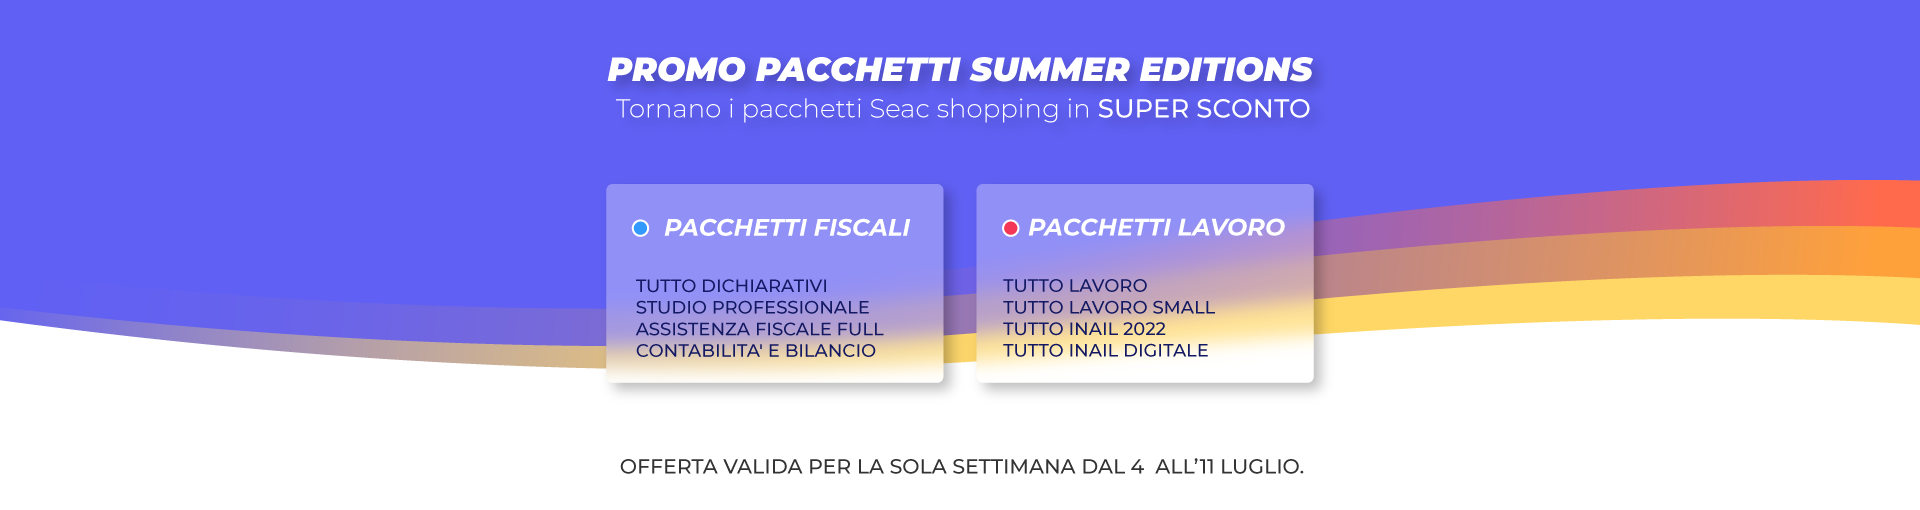 Promo Pacchetti Summer Edition 2022